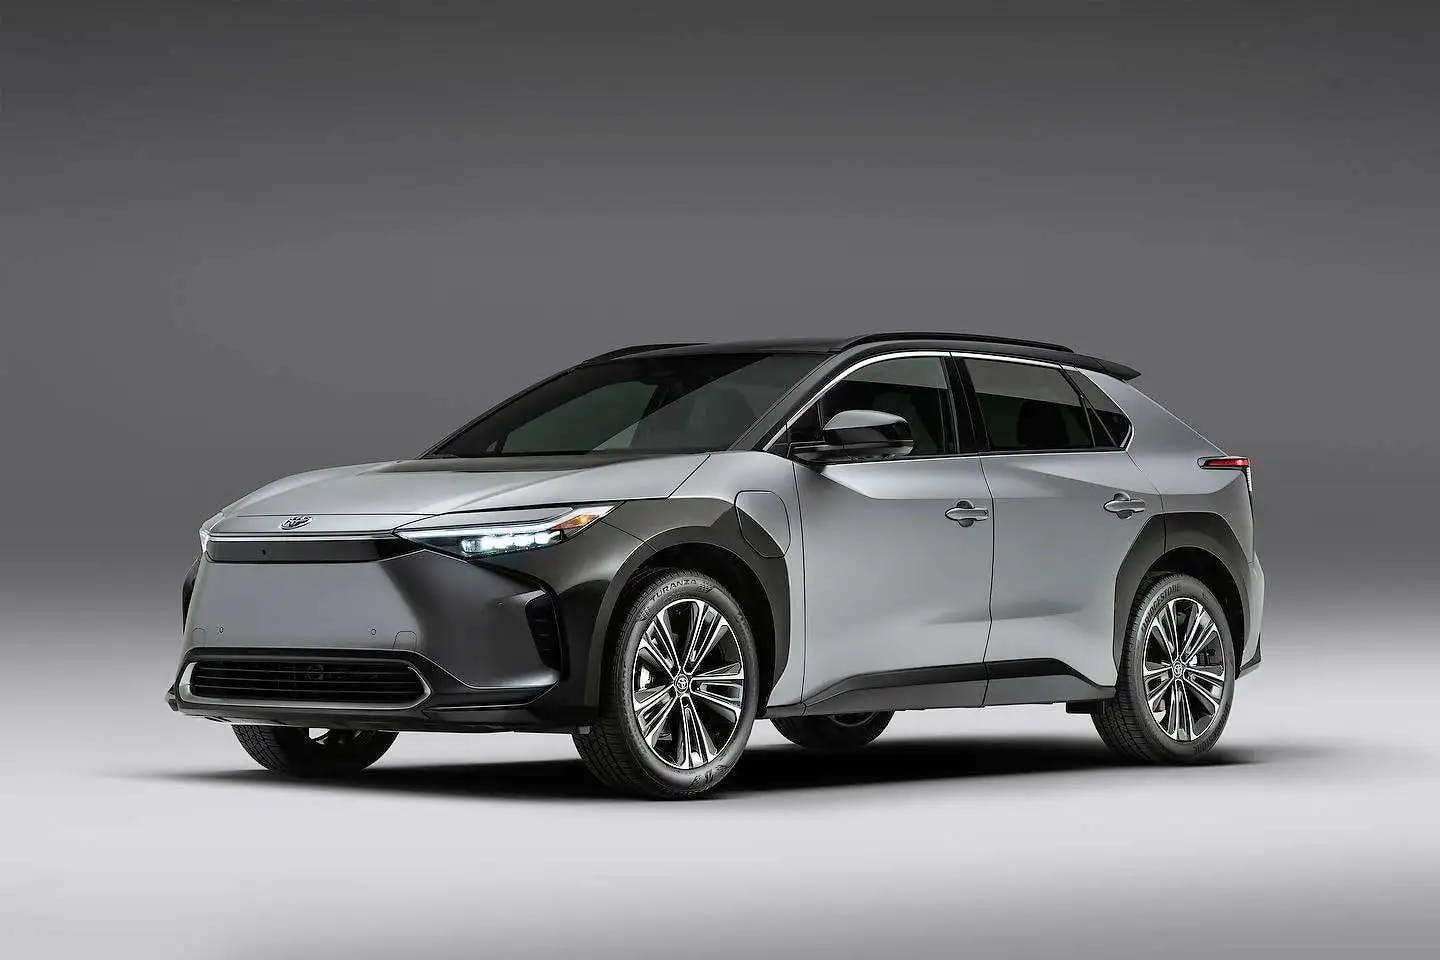 Mașinile electrice Toyota vor oferi o autonomie de 800 de kilometri până în 2026, urmând să fie echipate cu baterii solid state